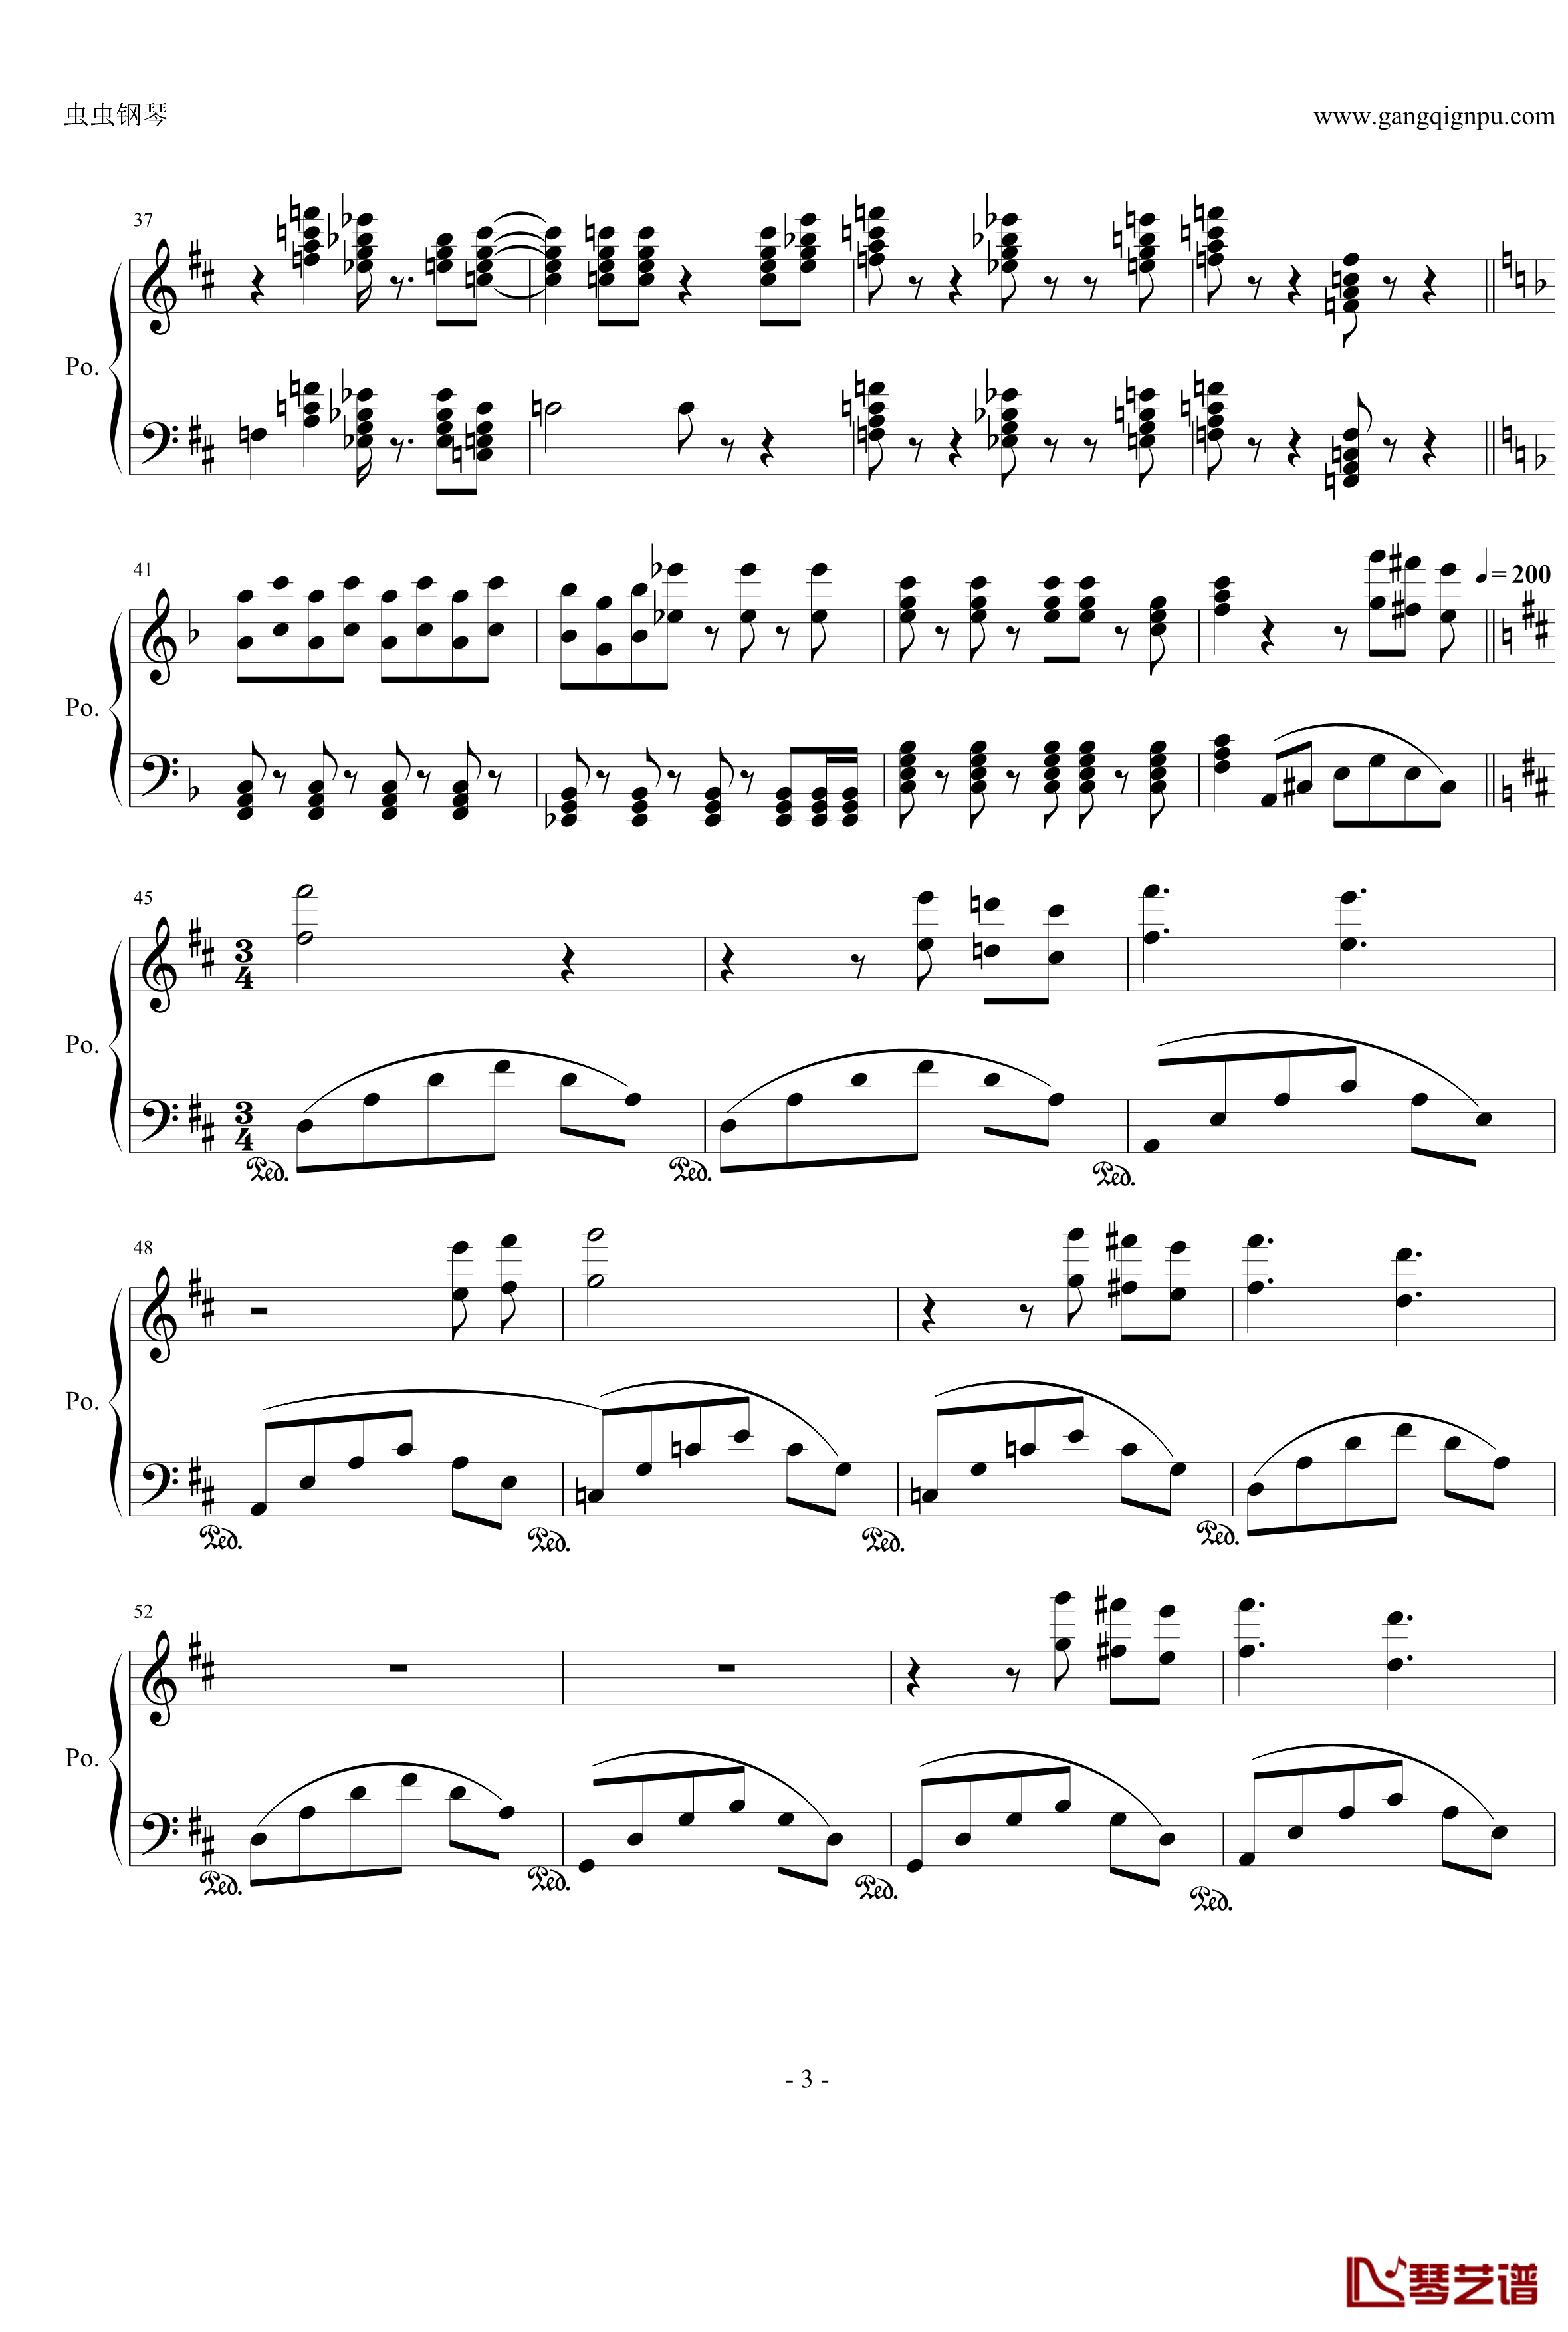 跳音和弦练习曲钢琴谱-水墨丹青music3